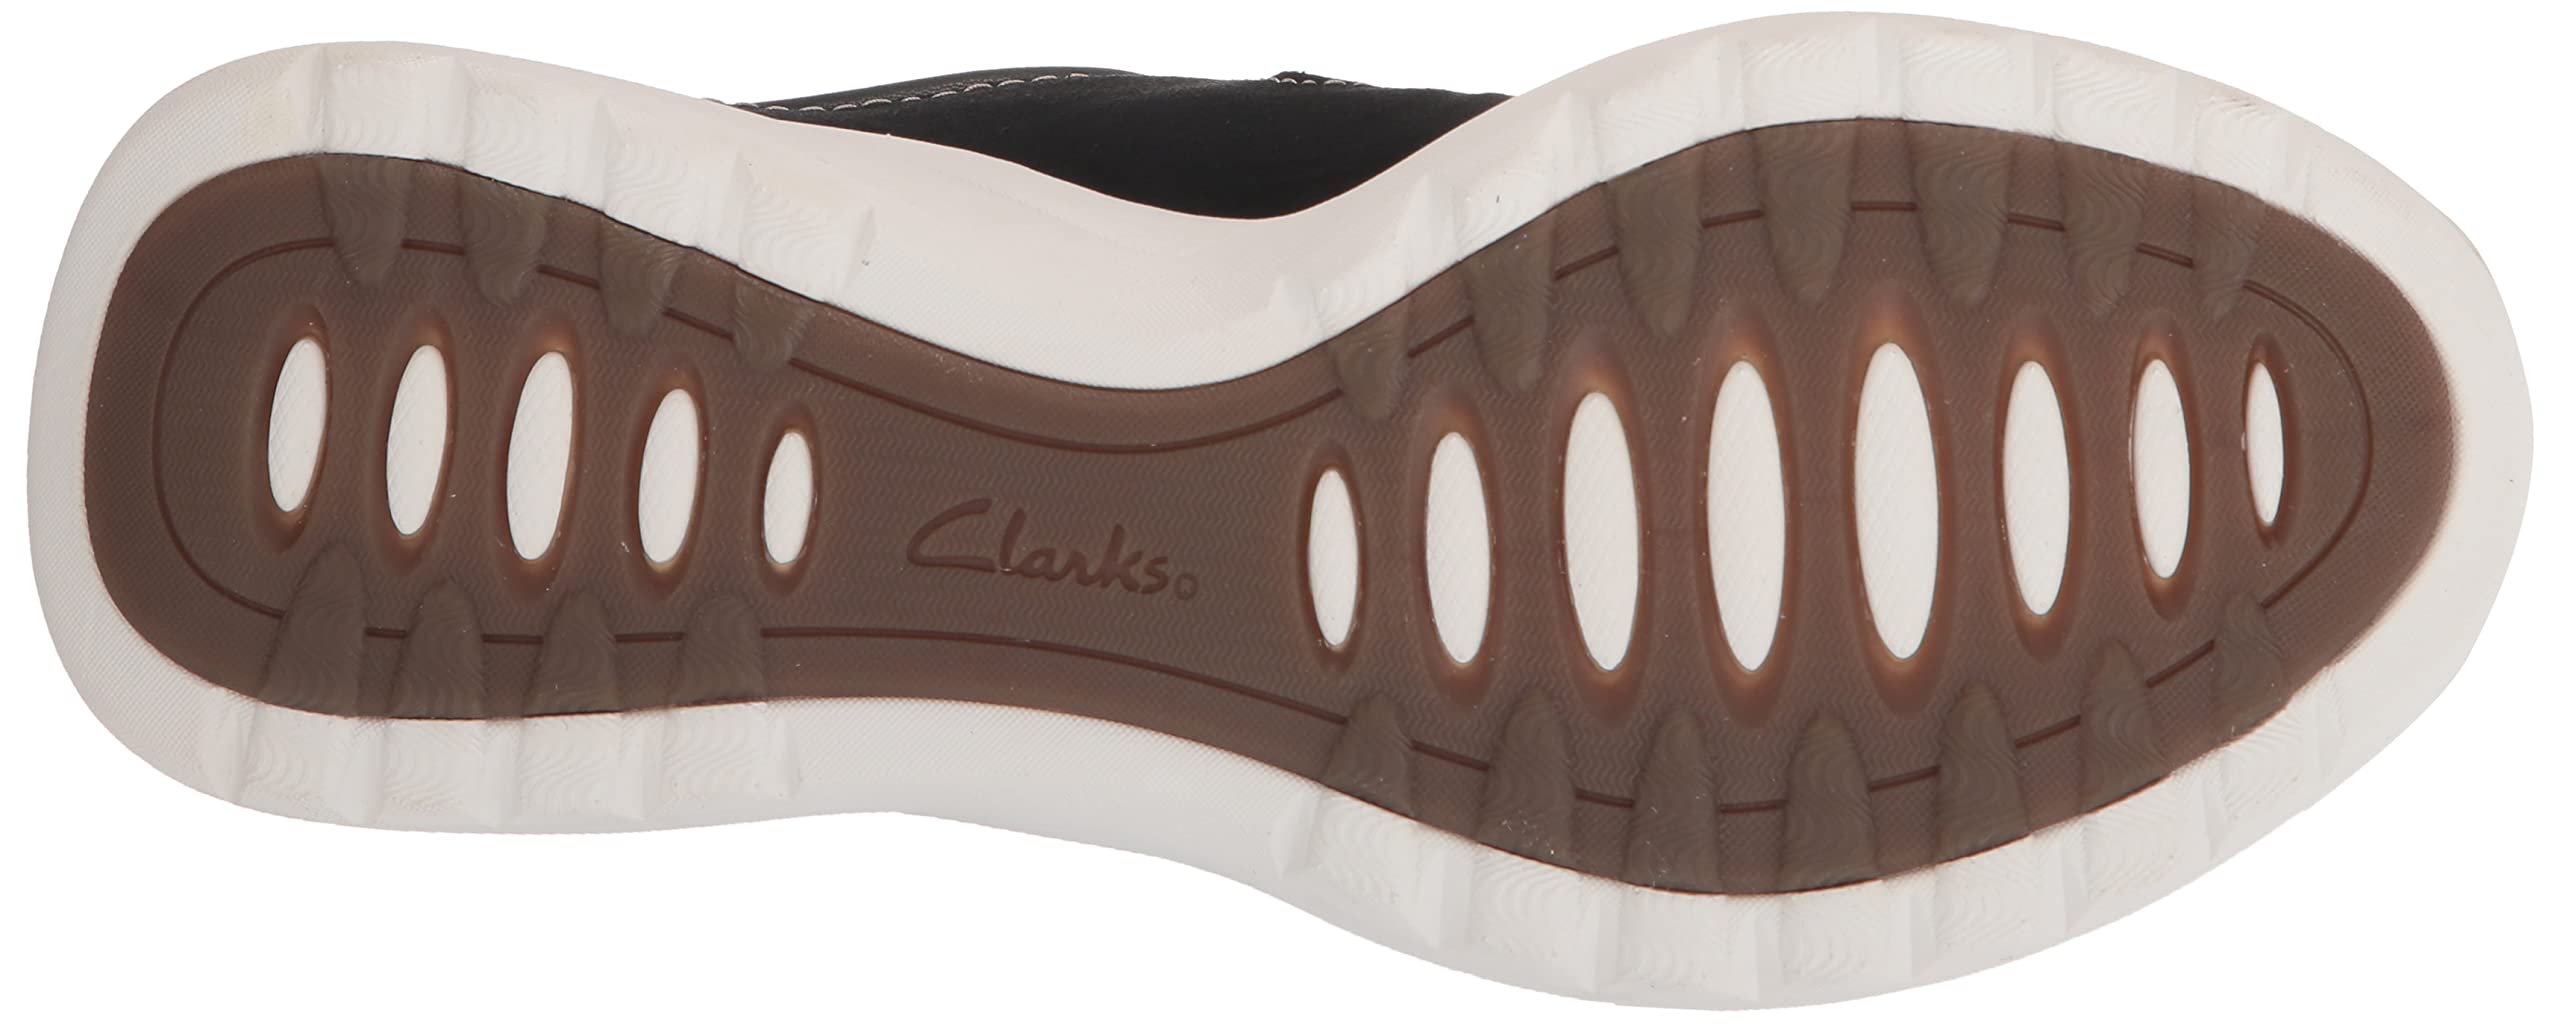 Clarks Women's Teagan Lace Sneaker